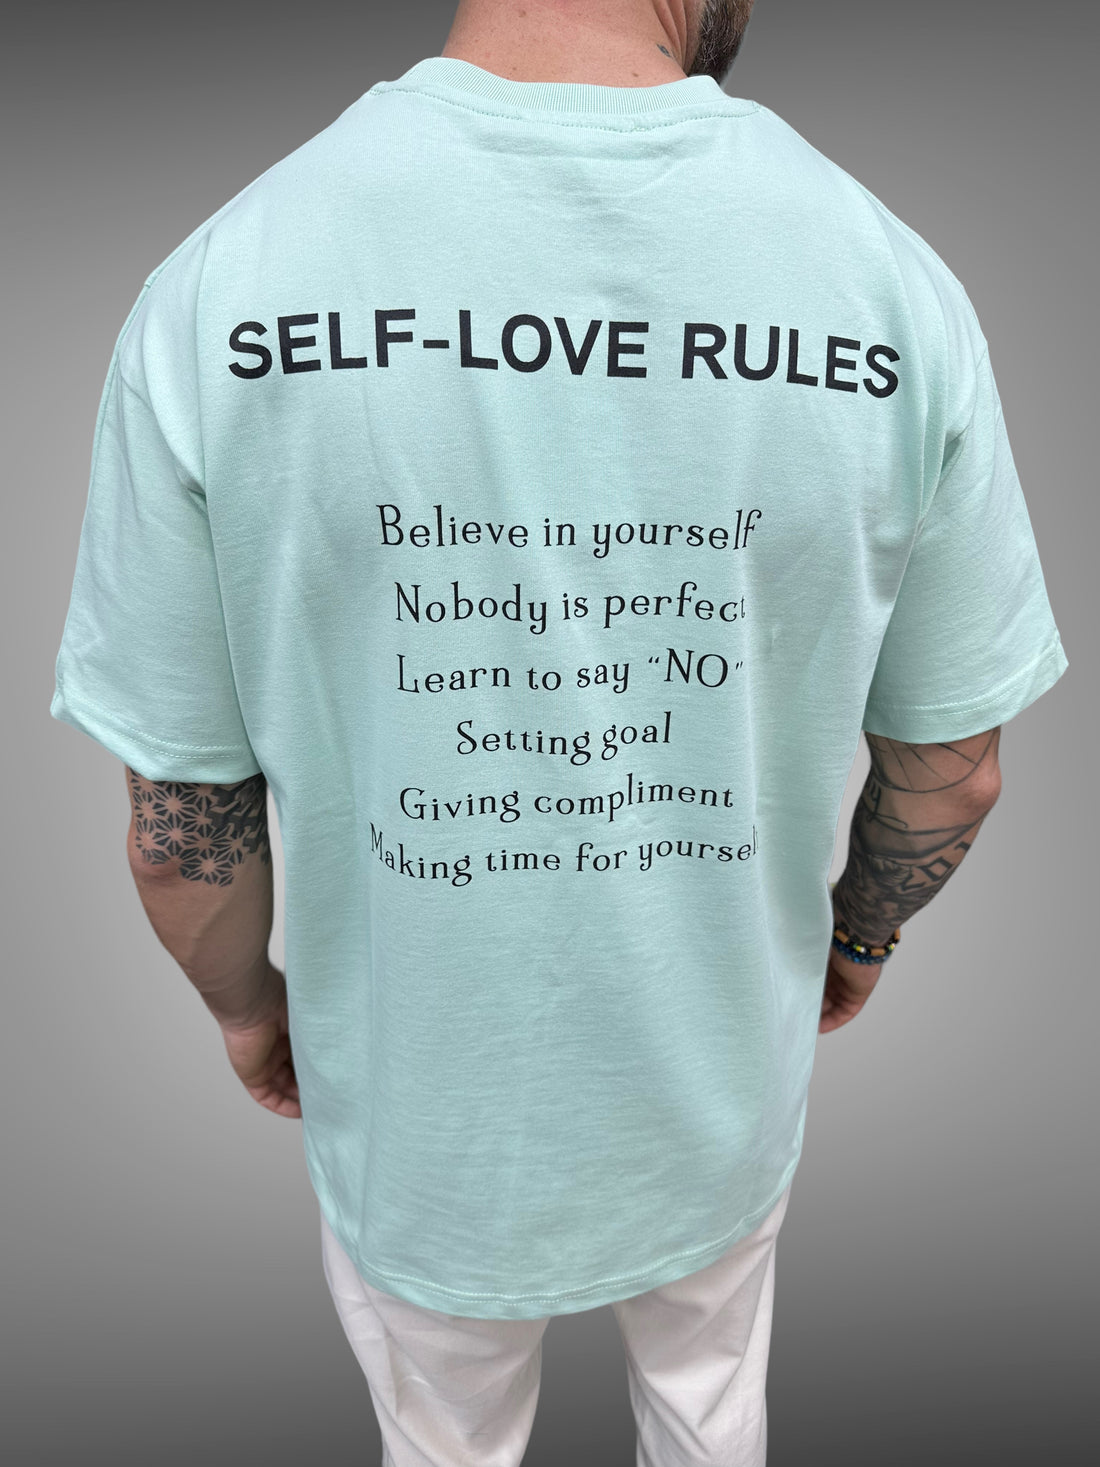 ADJ - T-shirt mint self rules - Stayin